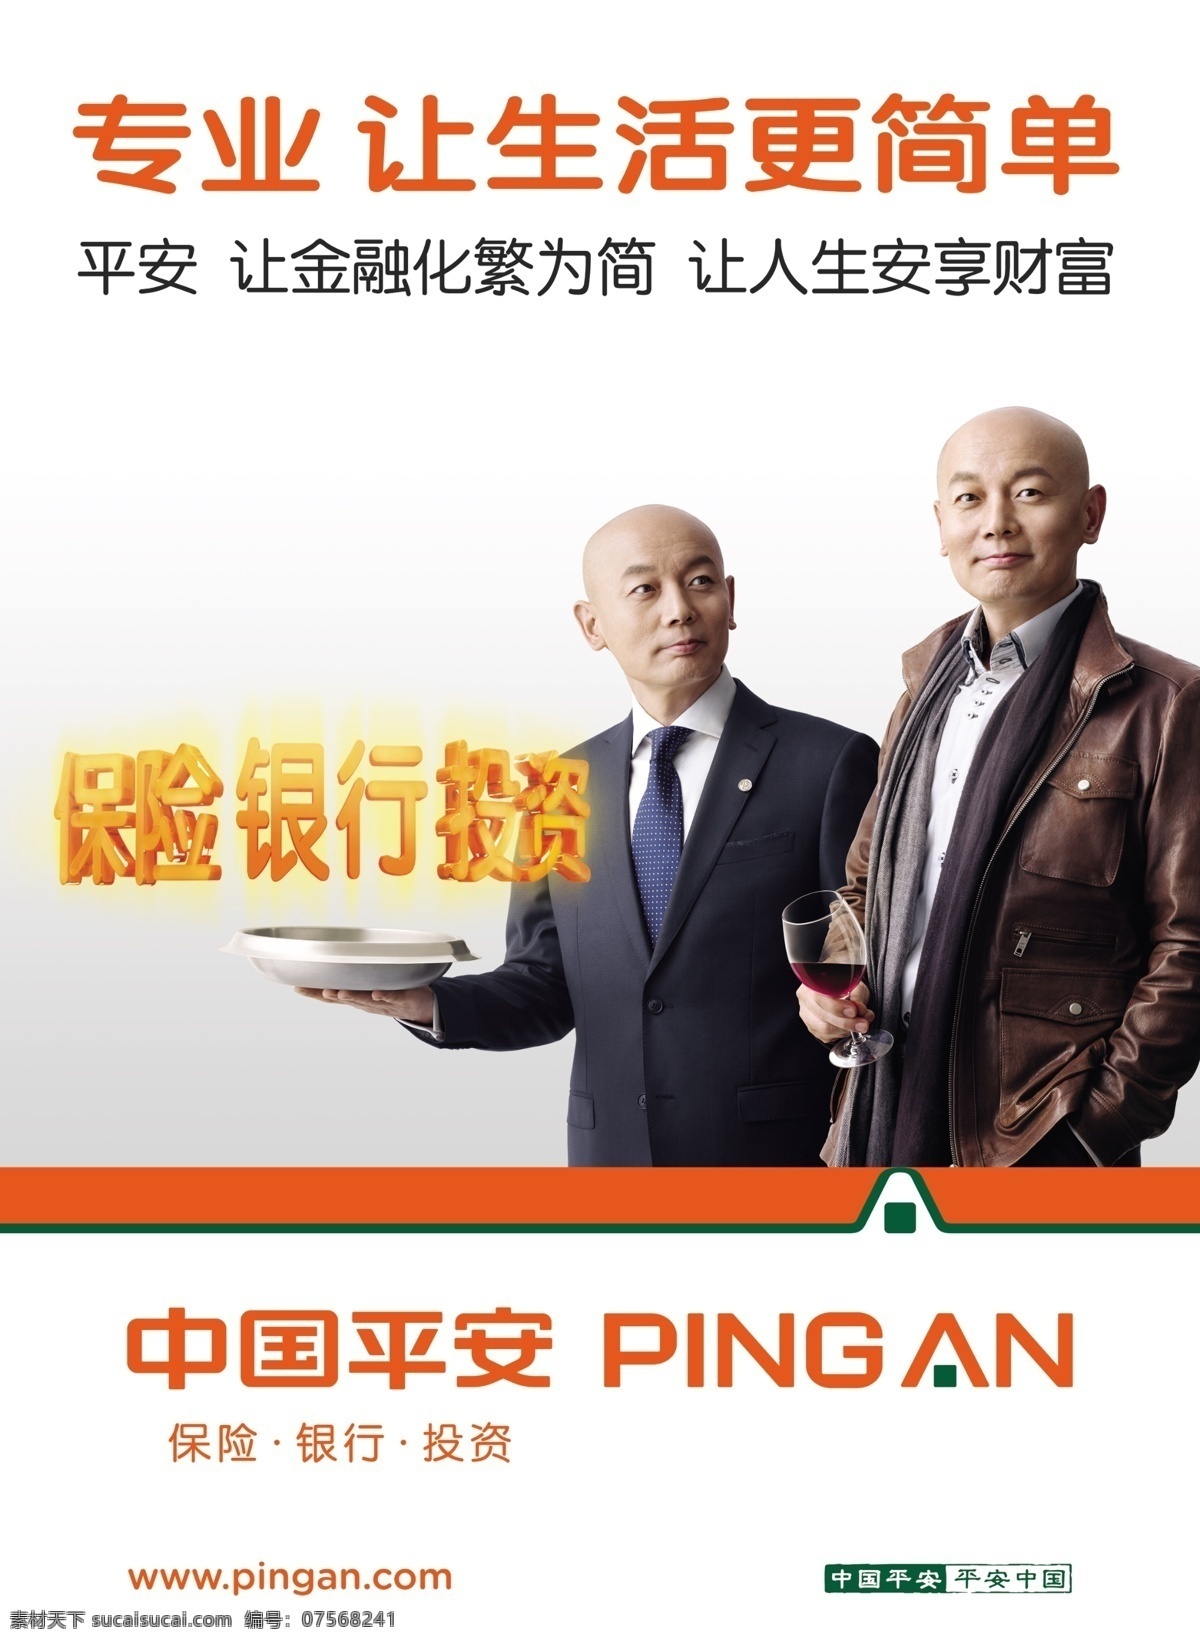 中国平安 保险广告 大气广告 葛优 广告设计模板 源文件